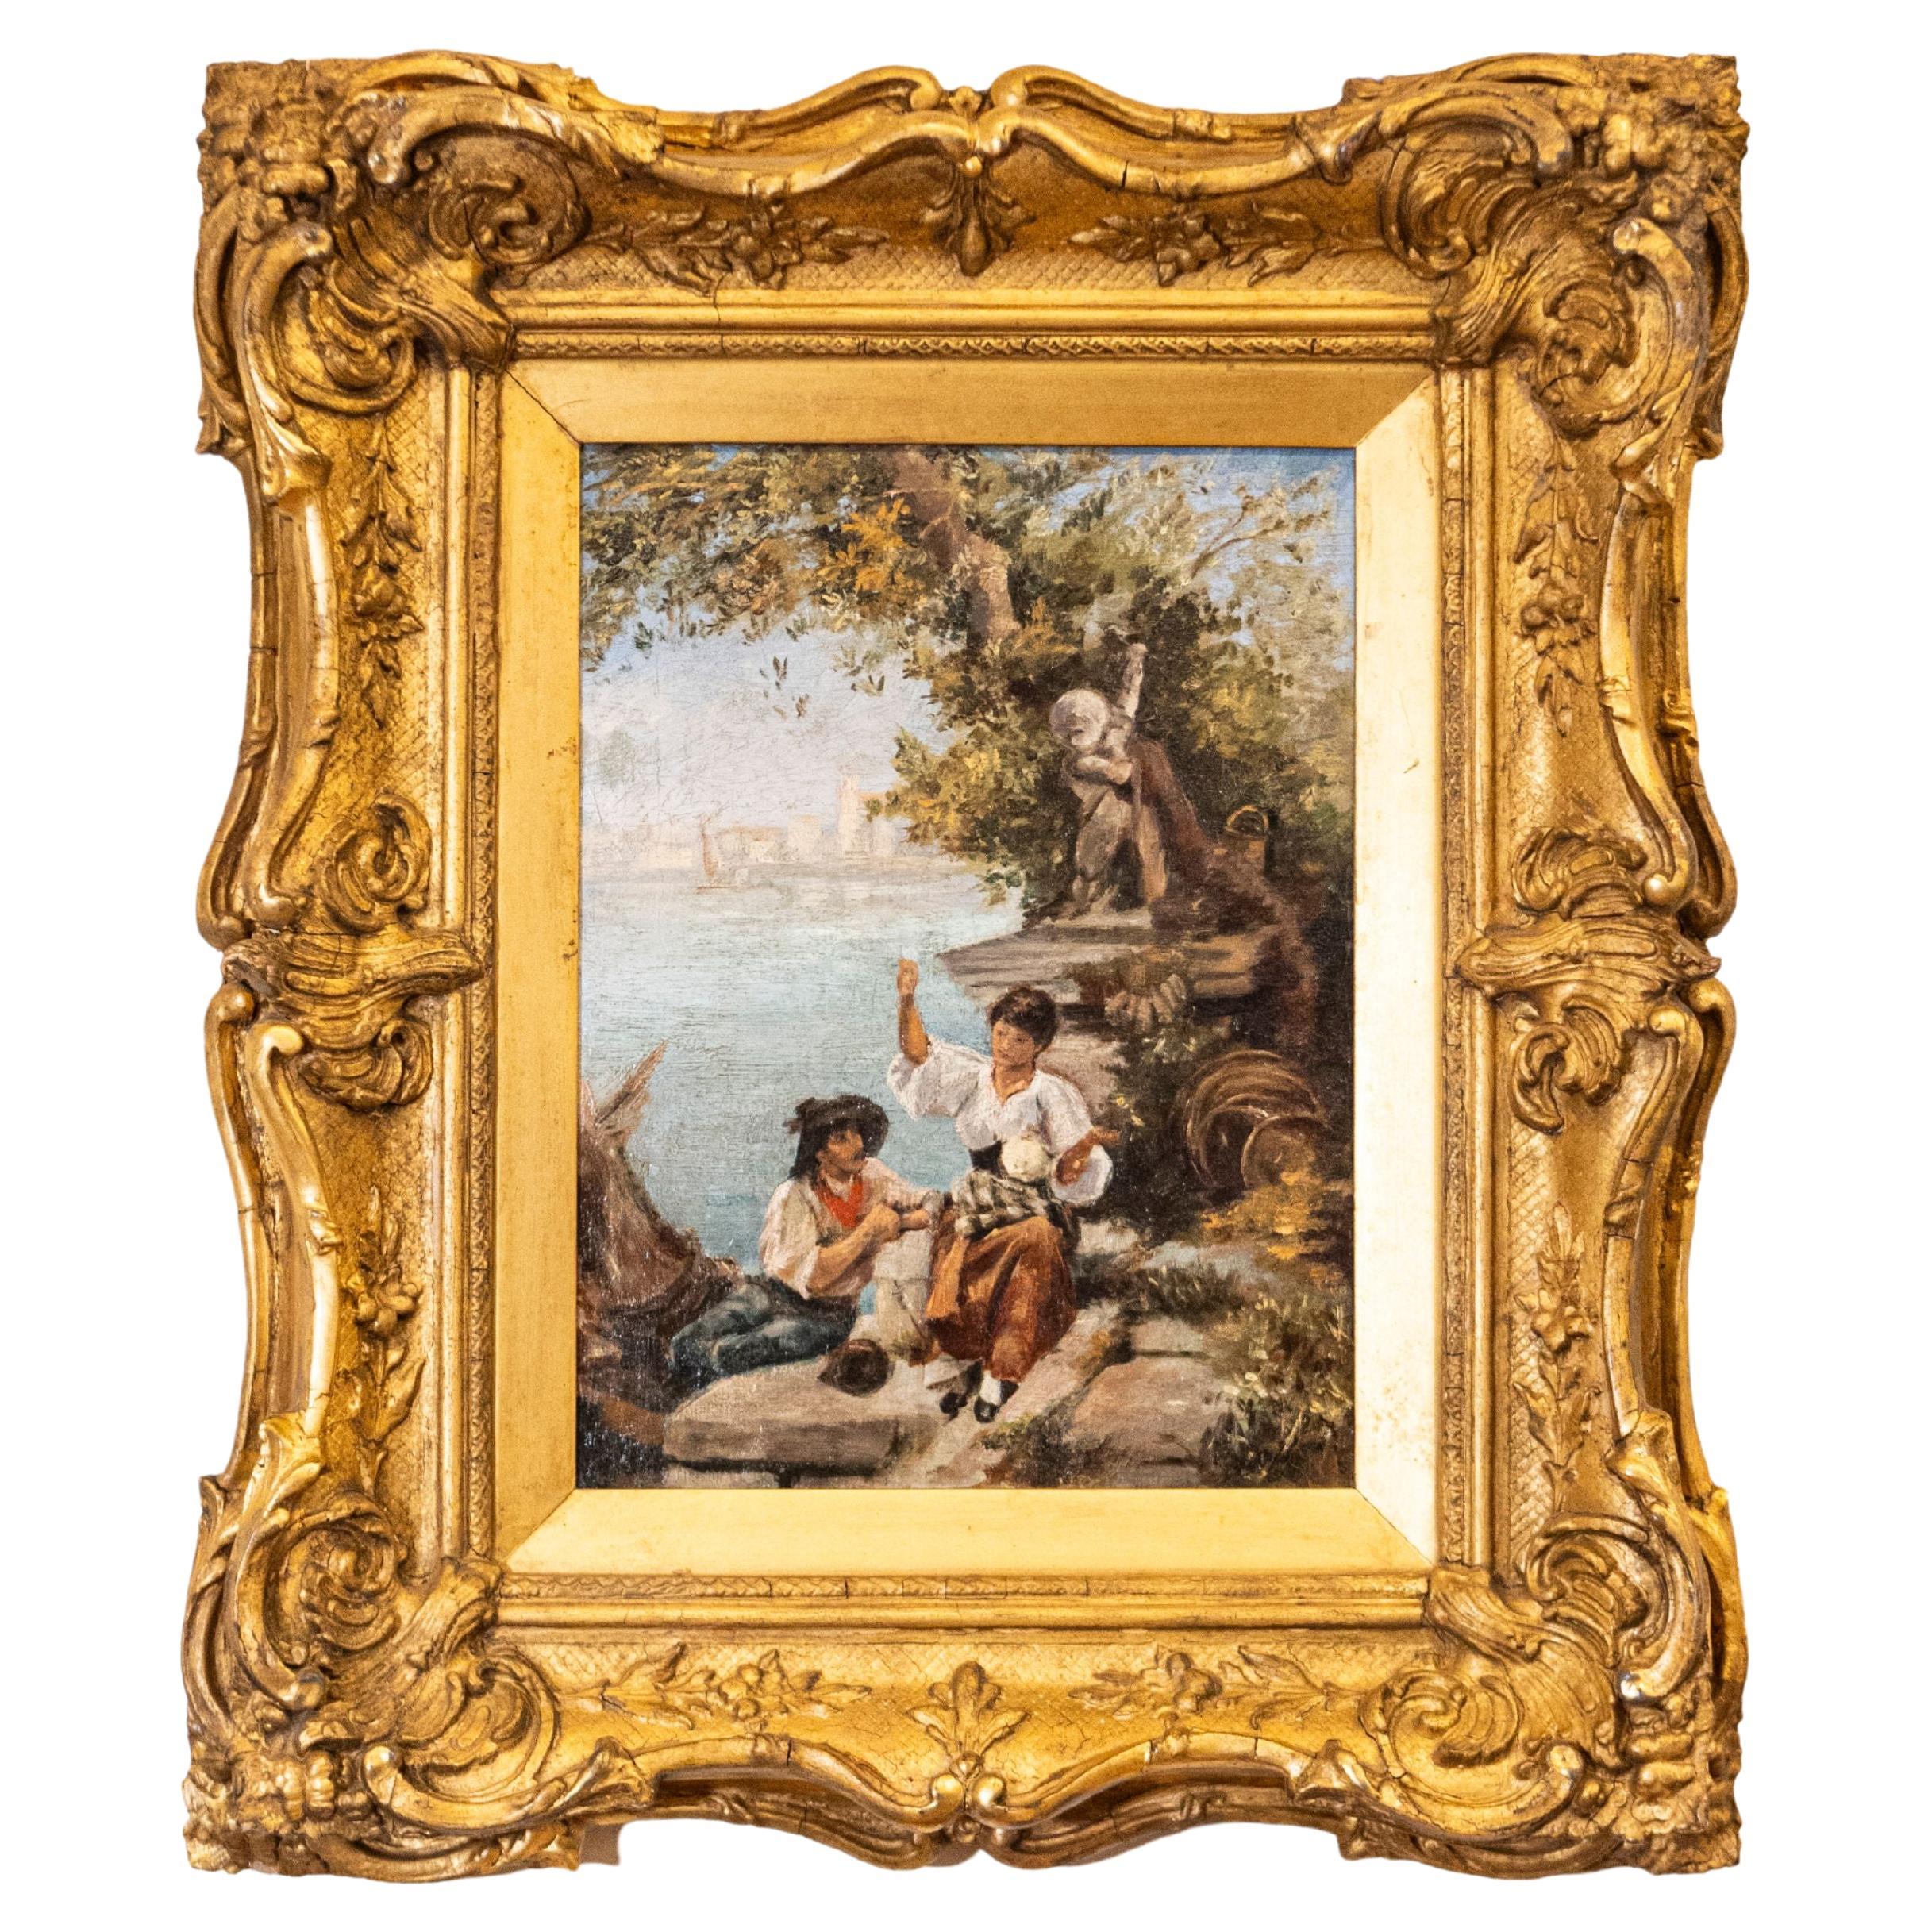 Peinture d'école continentale française du 19ème siècle représentant une scène de lagon vénitienne